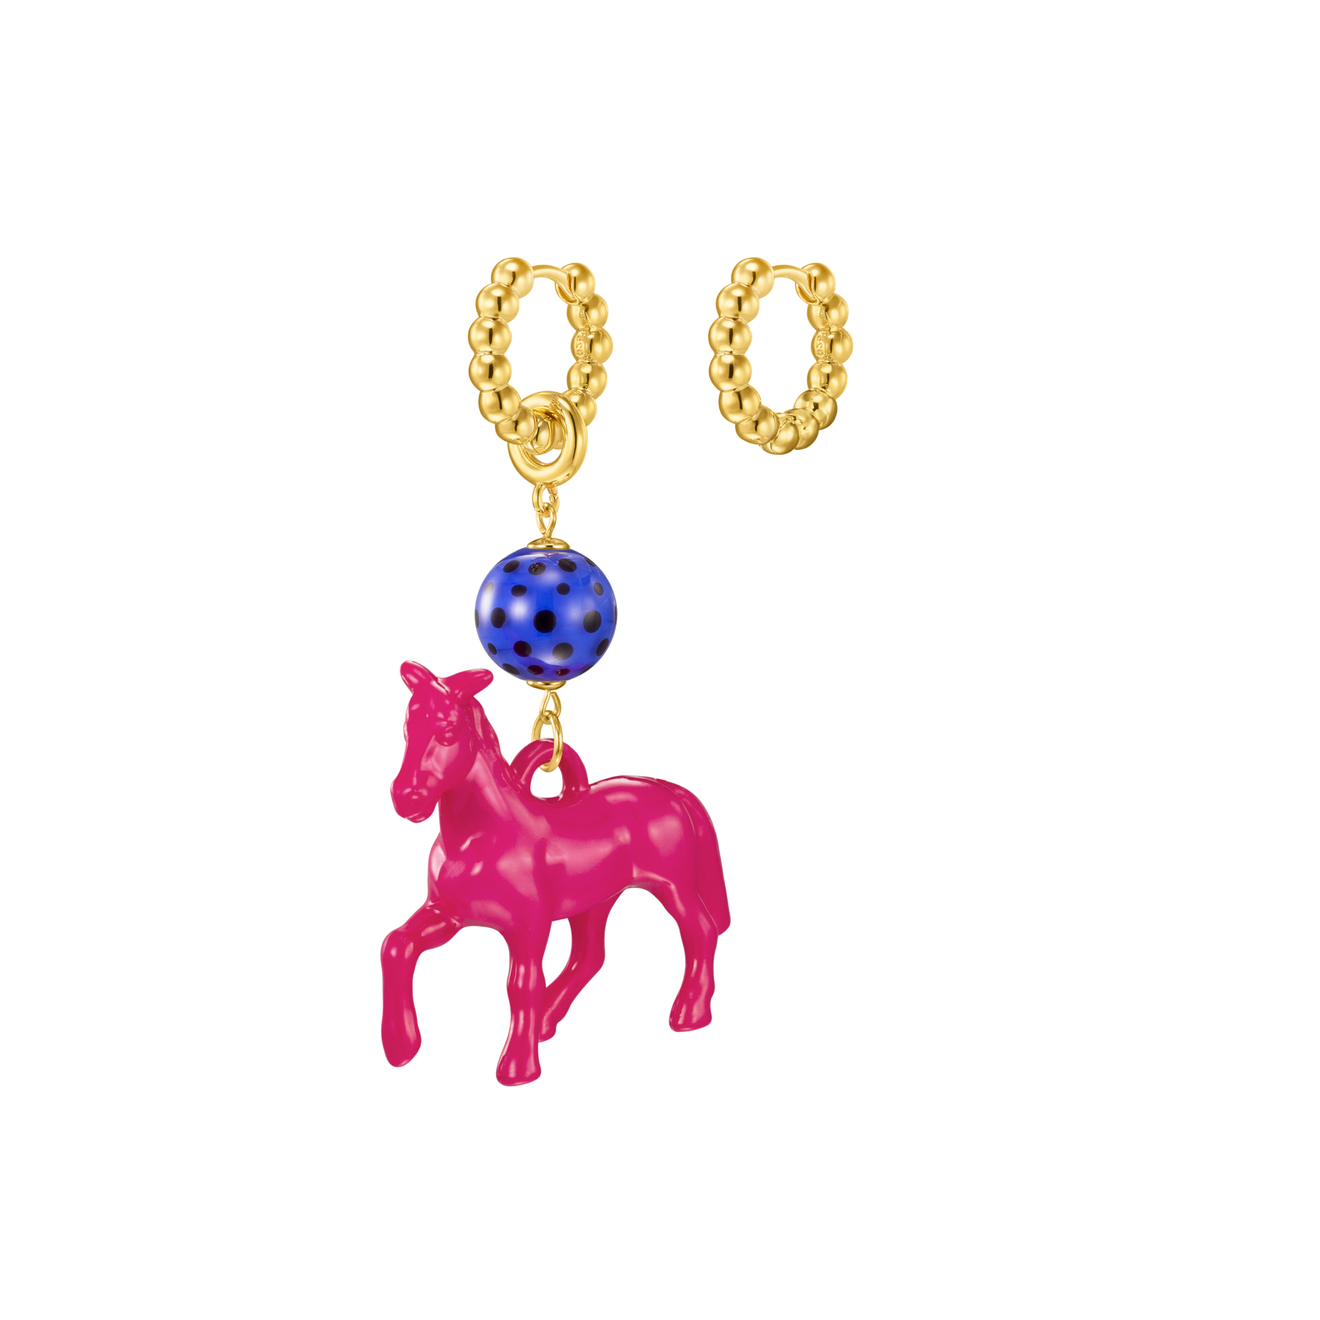 Kotlo Studio Fuchsia Horse. Золотистые серьги с ярко-розовой лошадкой и синей бусиной Мурано kotlo studio золотистые серьги с бусинами мурано red mermaid